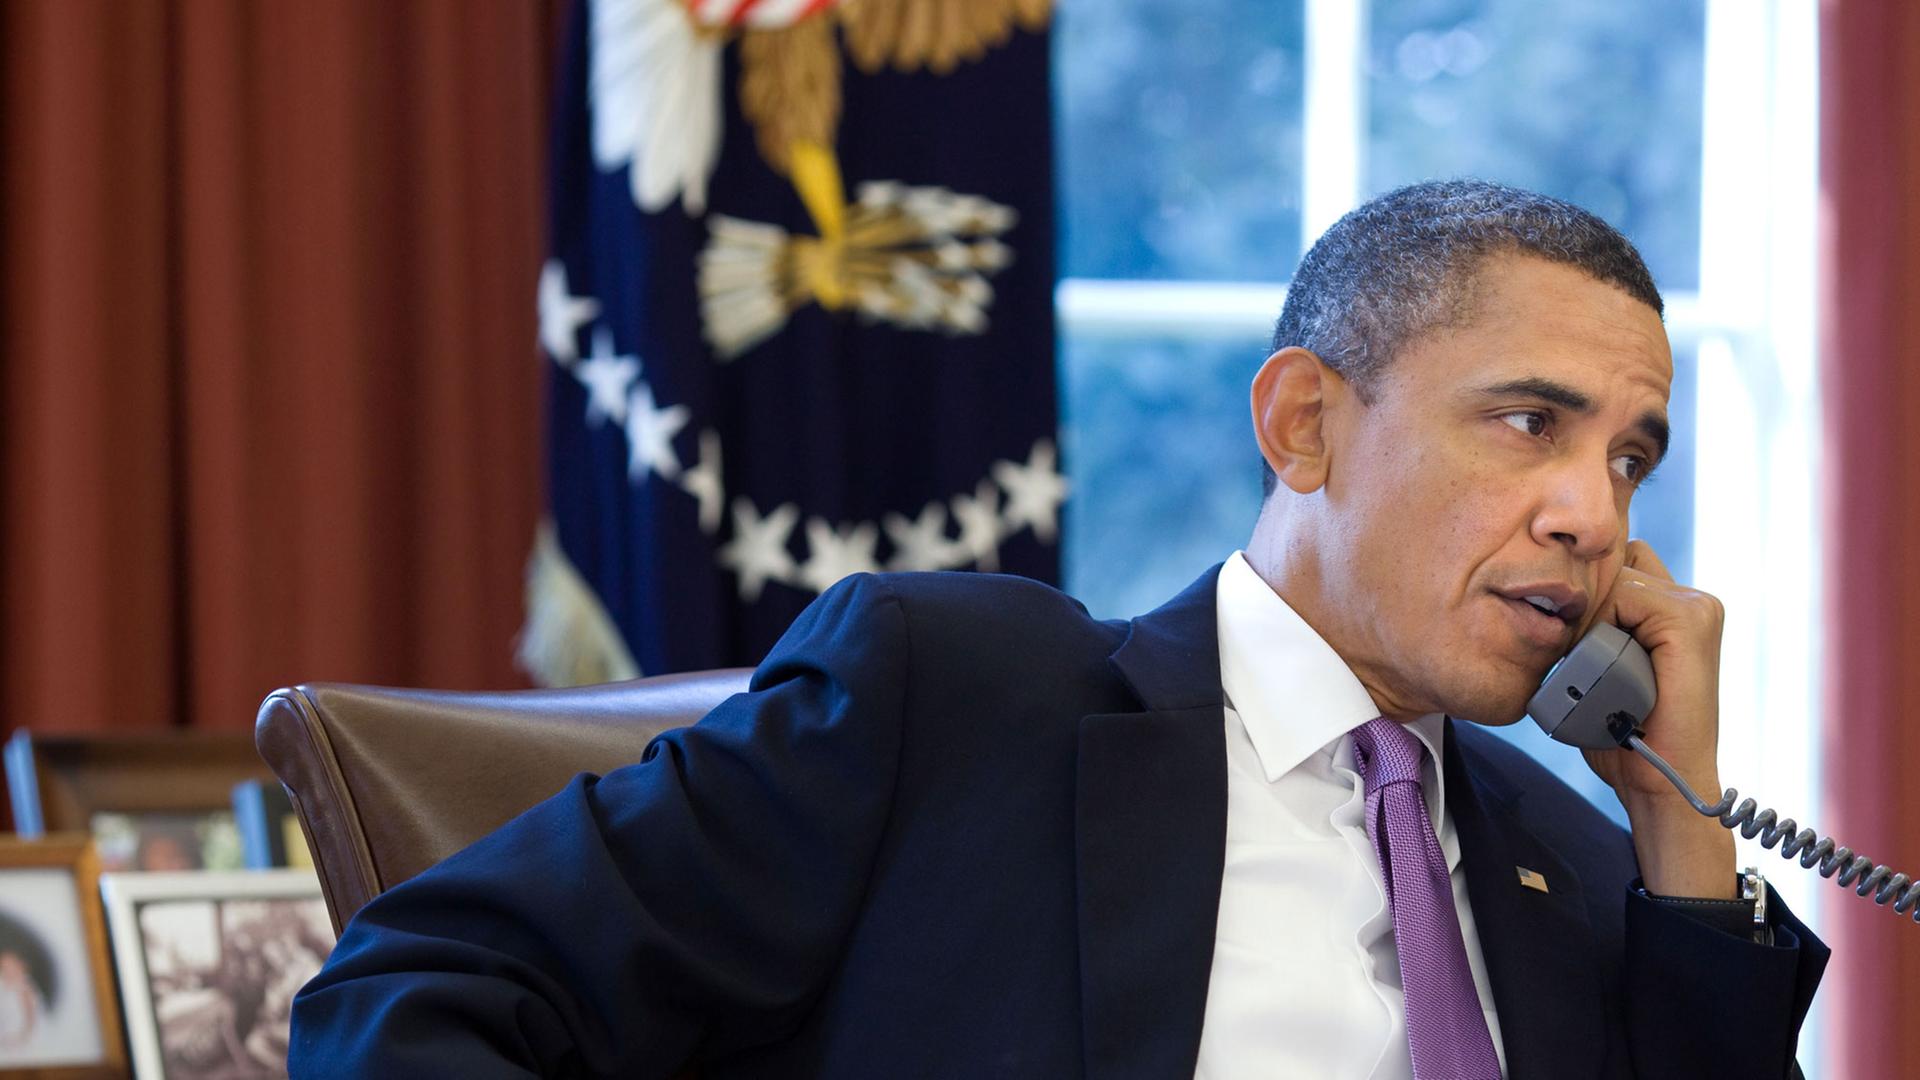 US-Präsident Barack Obama sitzt an seinem Schreibtisch im Oval Office, in der linken Hand hält er den Telefonhörer.